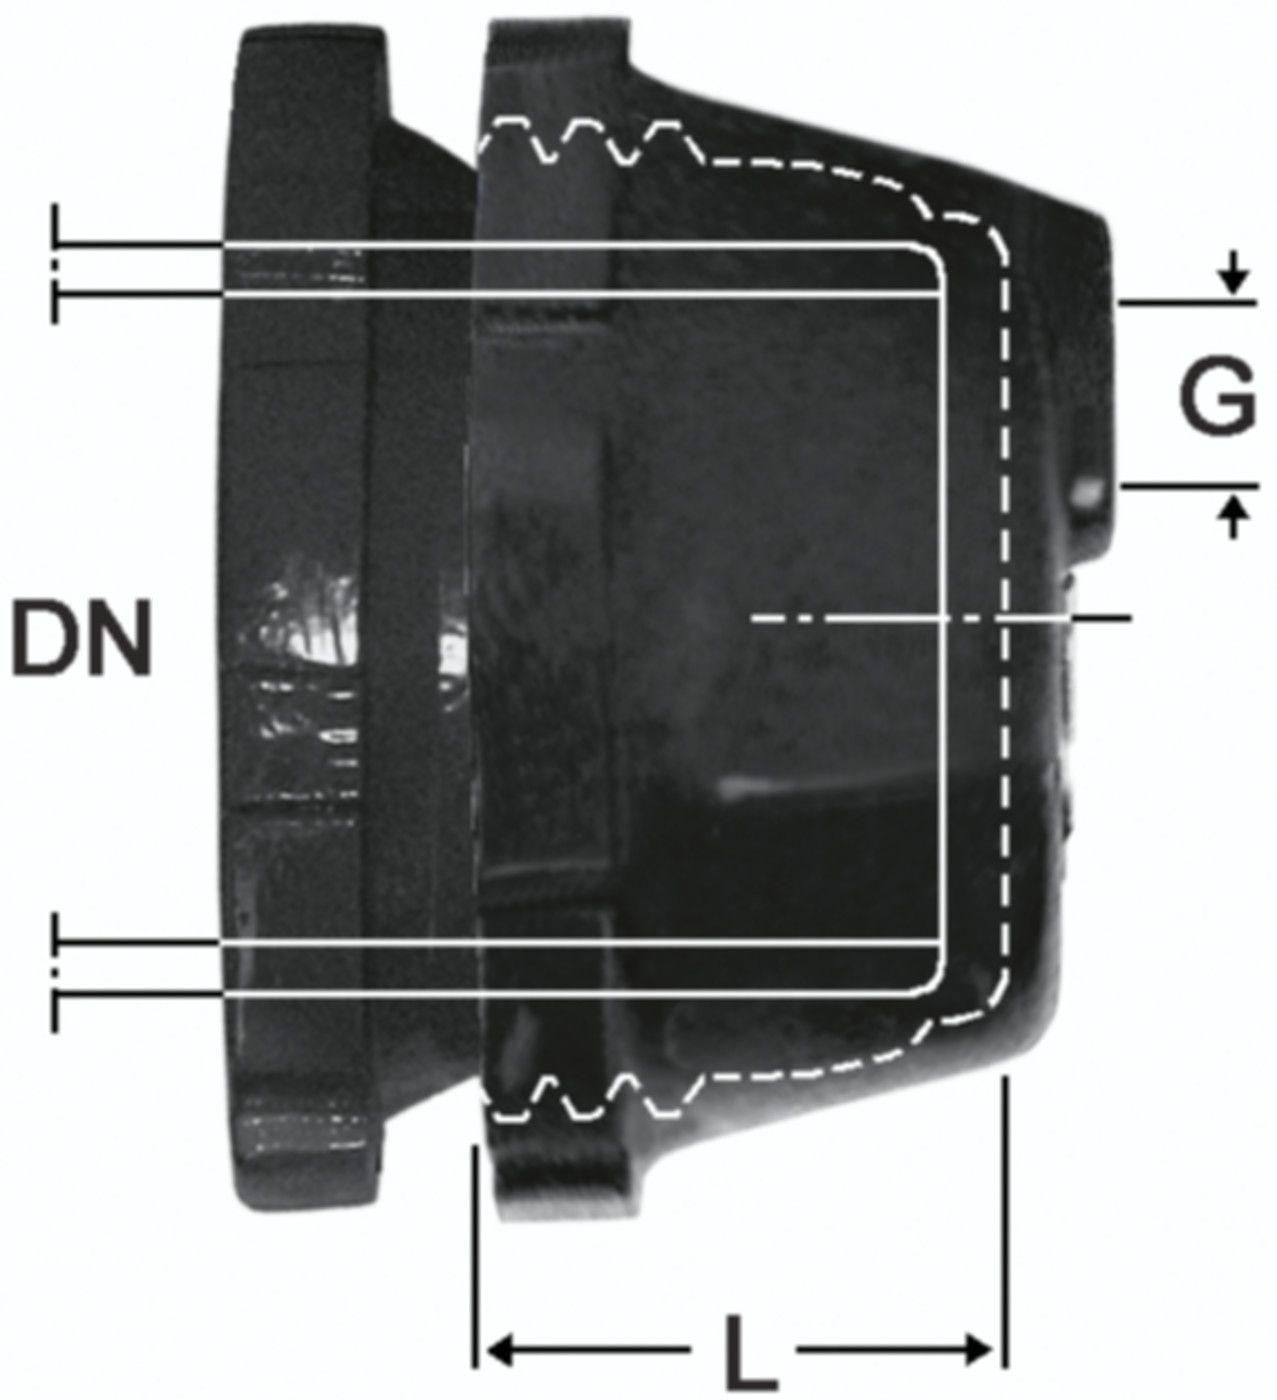 SM-Verschlusskappe Fig. 2395 DN 200 - 2" - Von Roll Schraubmuffenformstücke